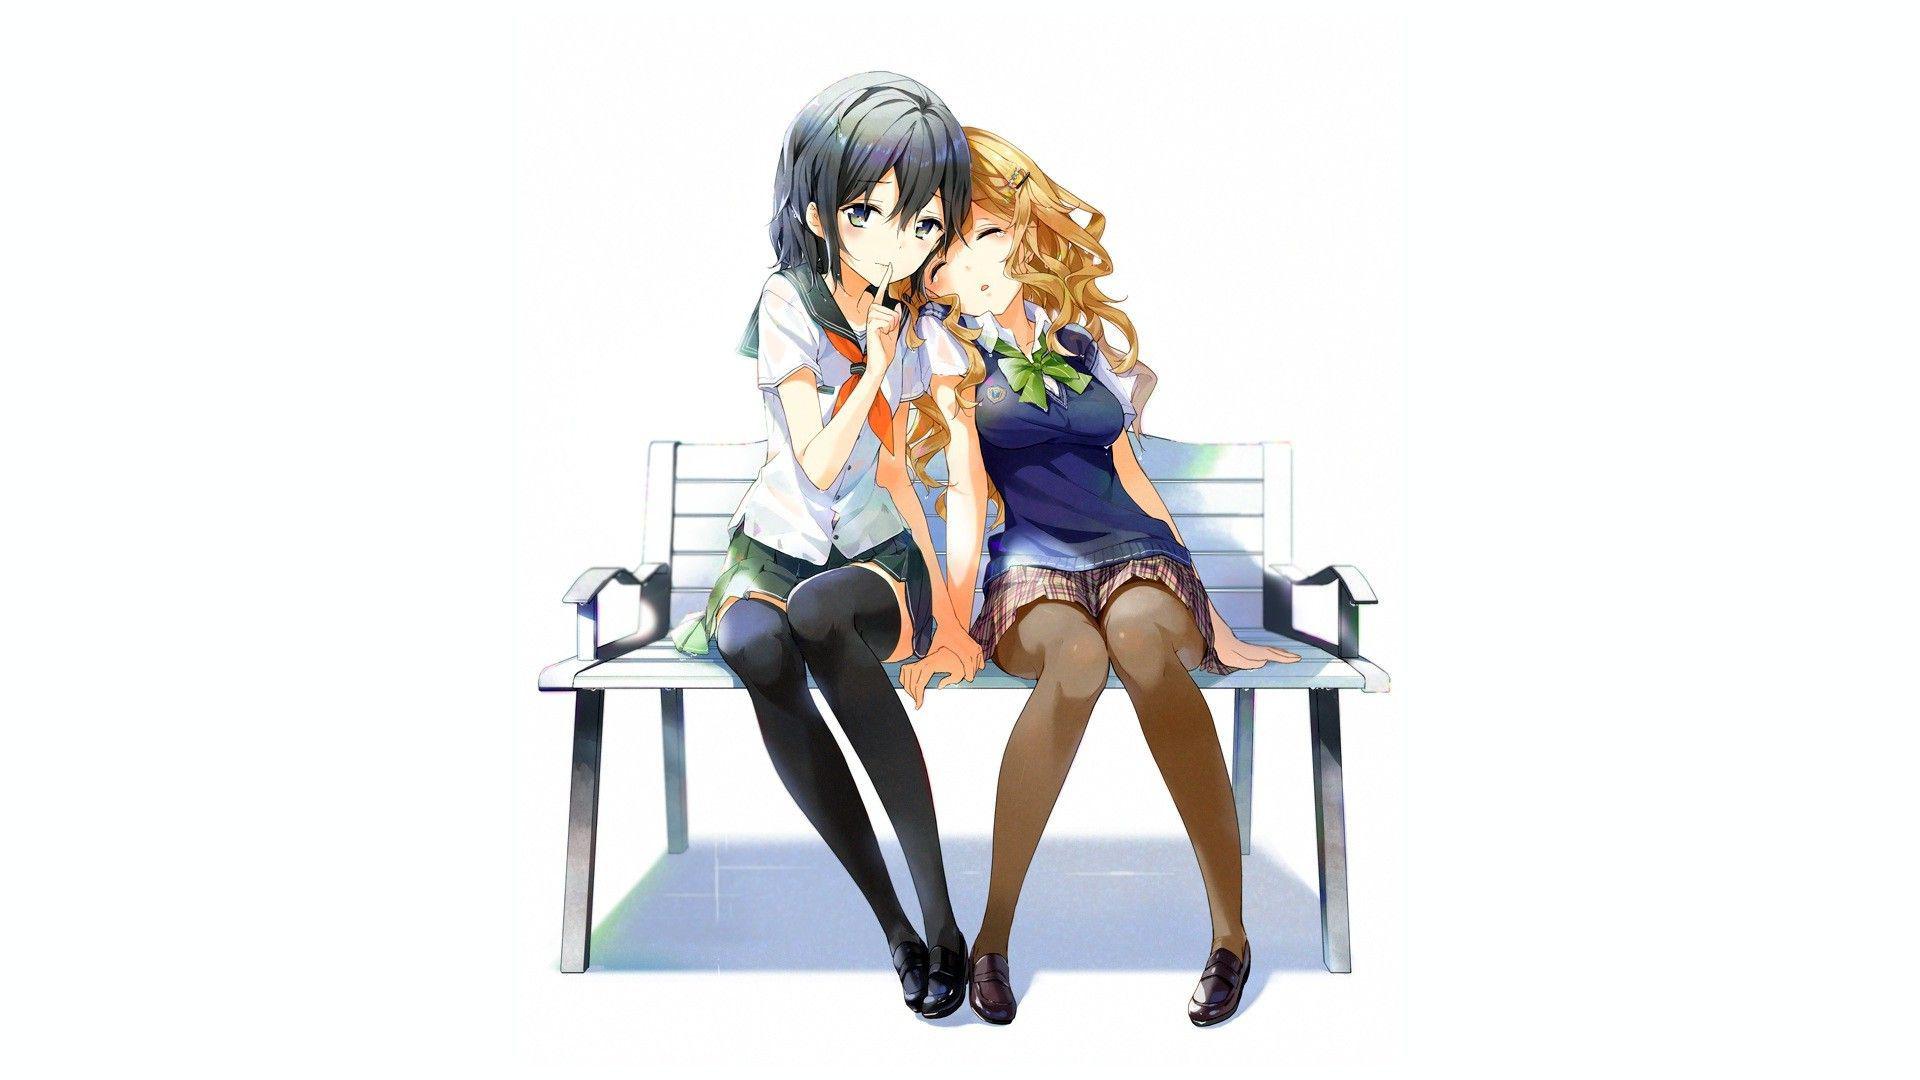 Anime girls on a bench wallpaper | anime | Wallpaper Better